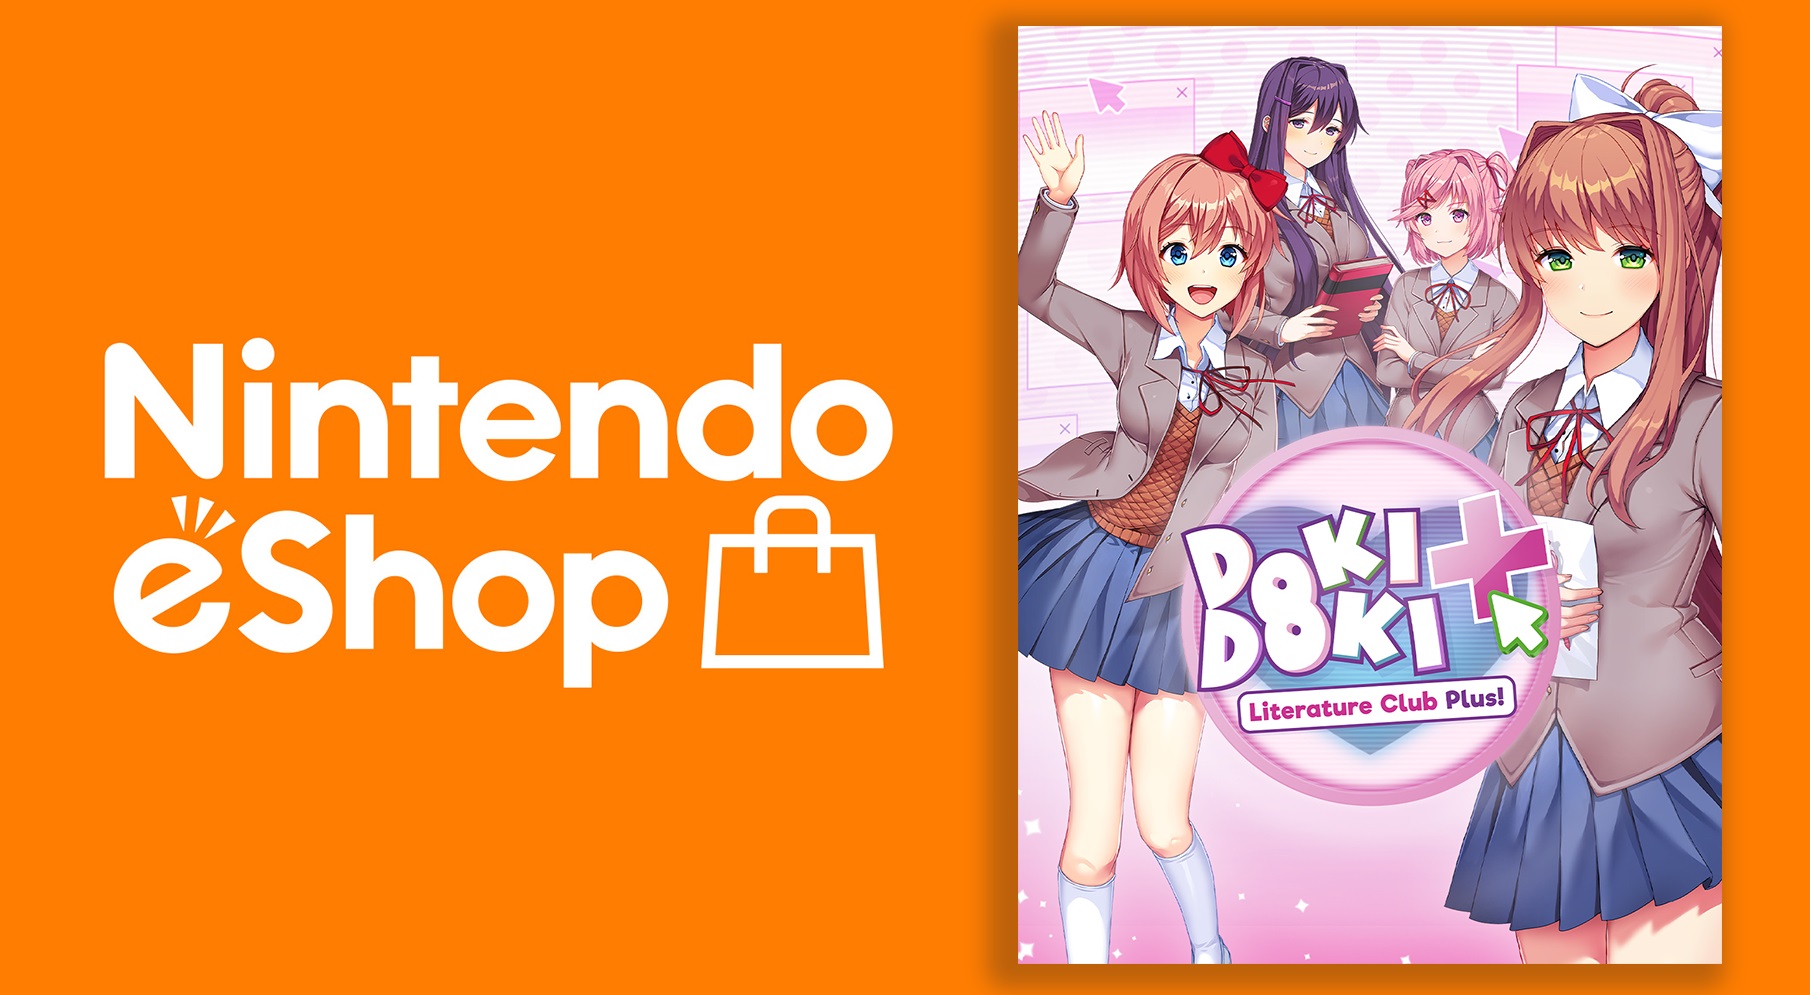 Doki Doki Literature Club Plus! for Nintendo Switch - Nintendo Official Site